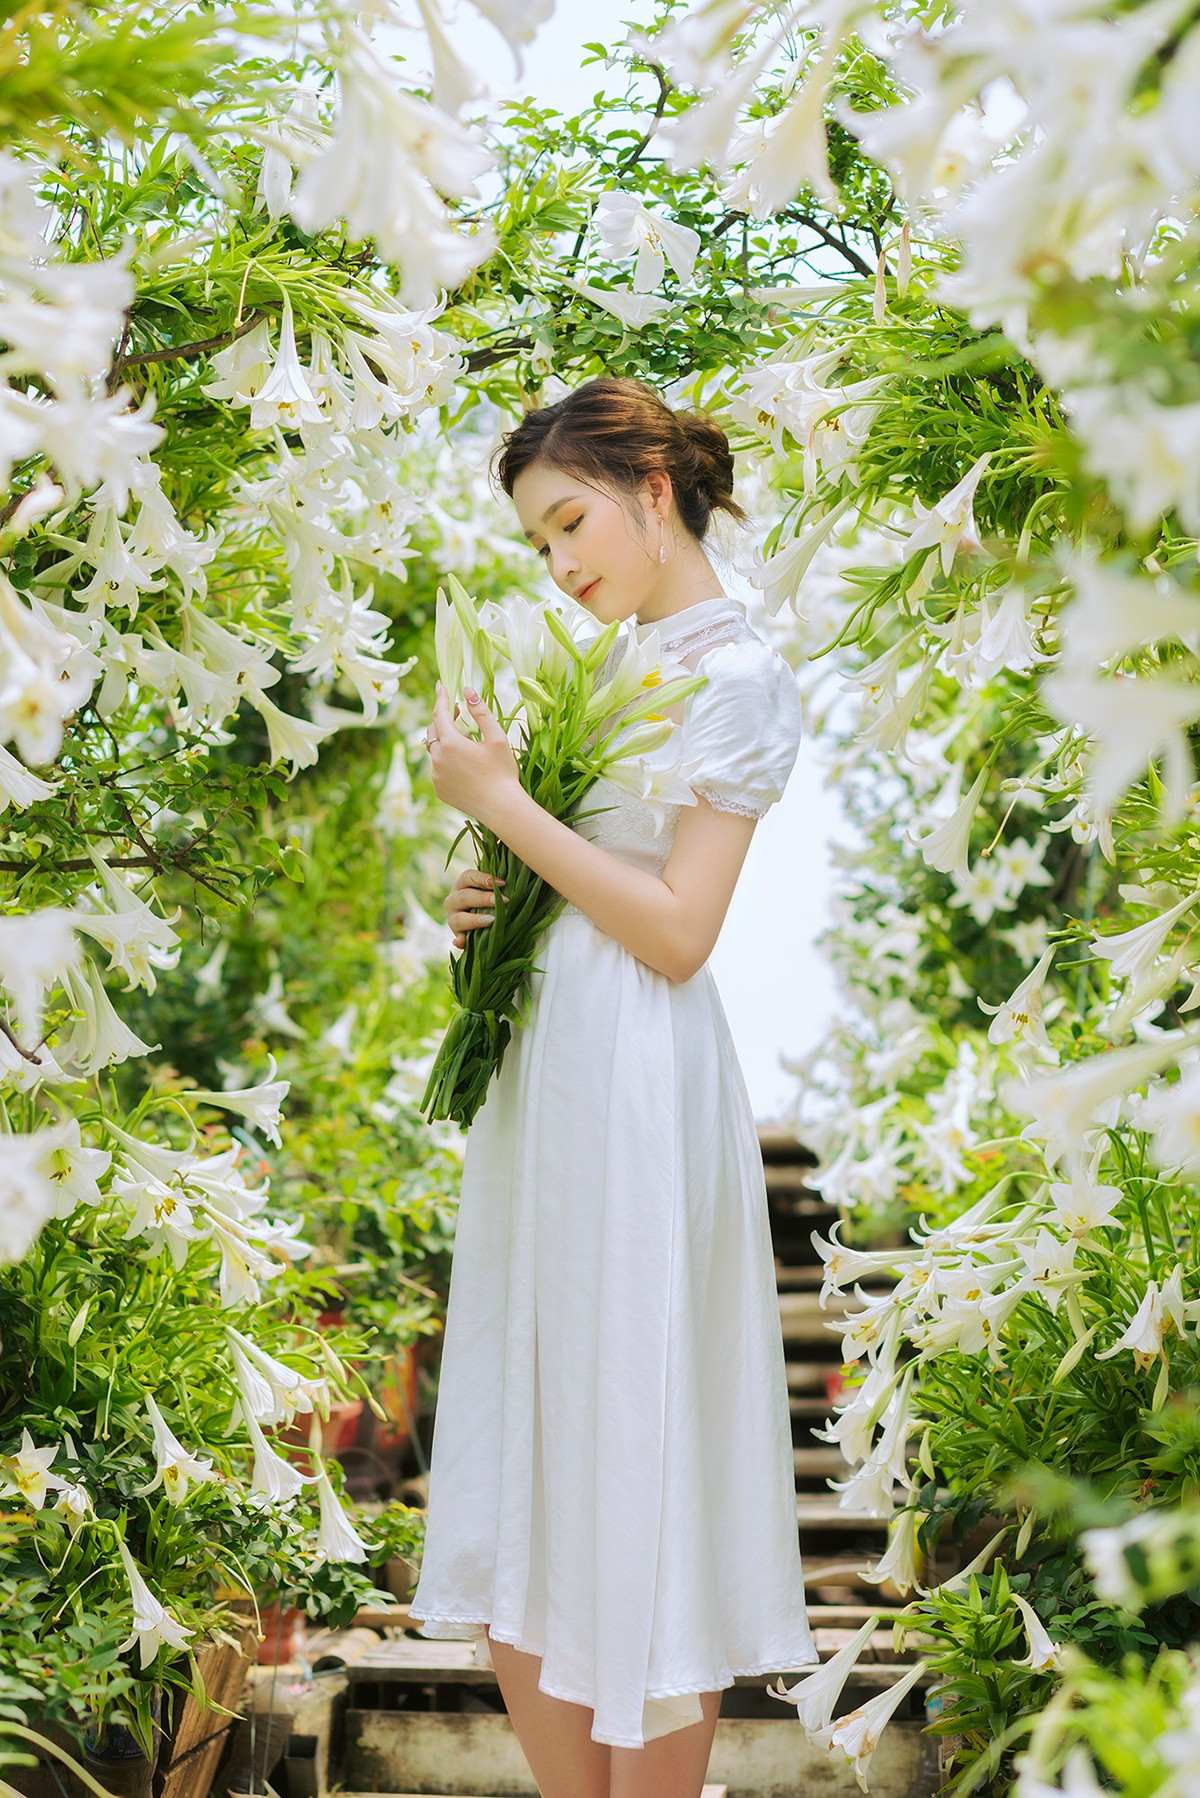 Hoa khôi ĐH Quốc gia Hà Nội khoe lưng trắng ngần giữa vườn loa kèn mùa hạ - 9